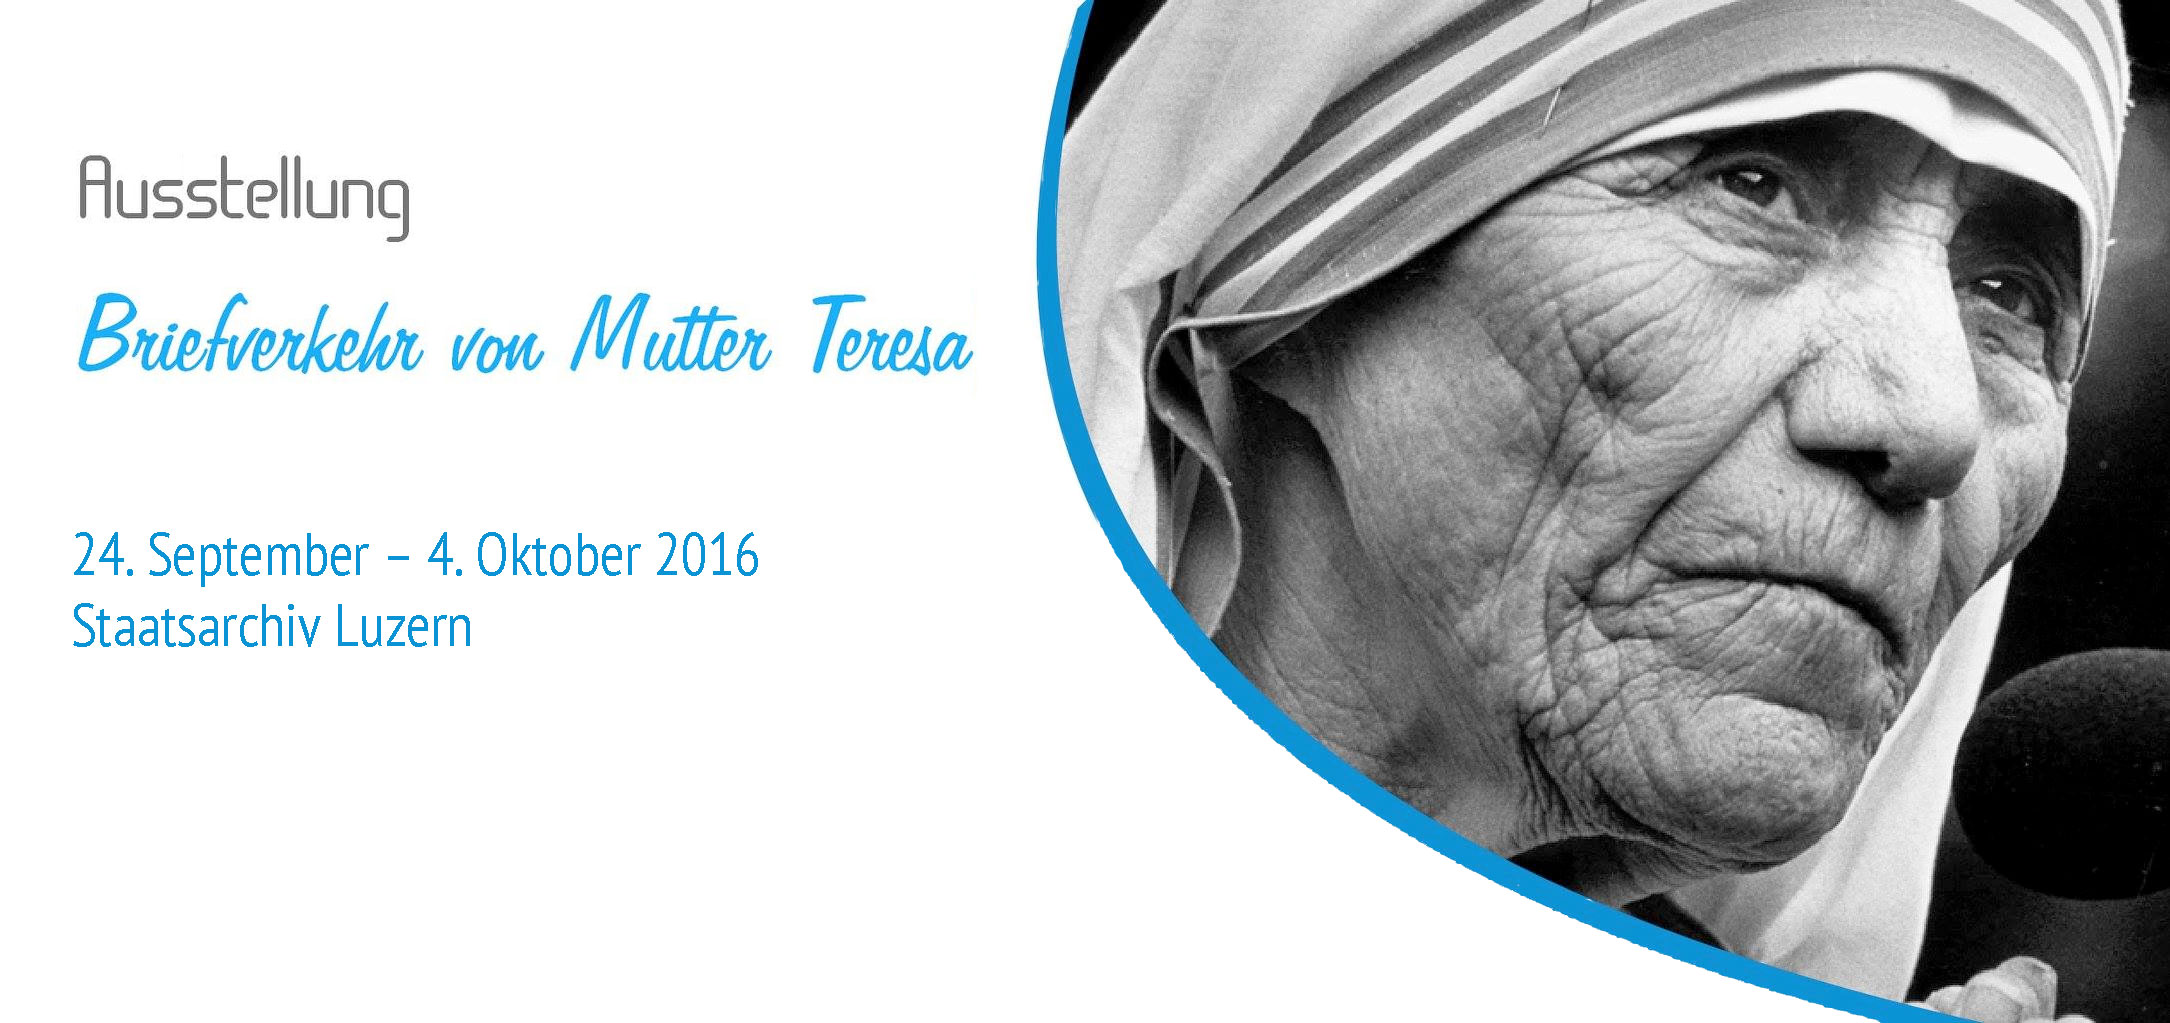 Ausstellung Briefverkehr Mutter Teresa Teaser